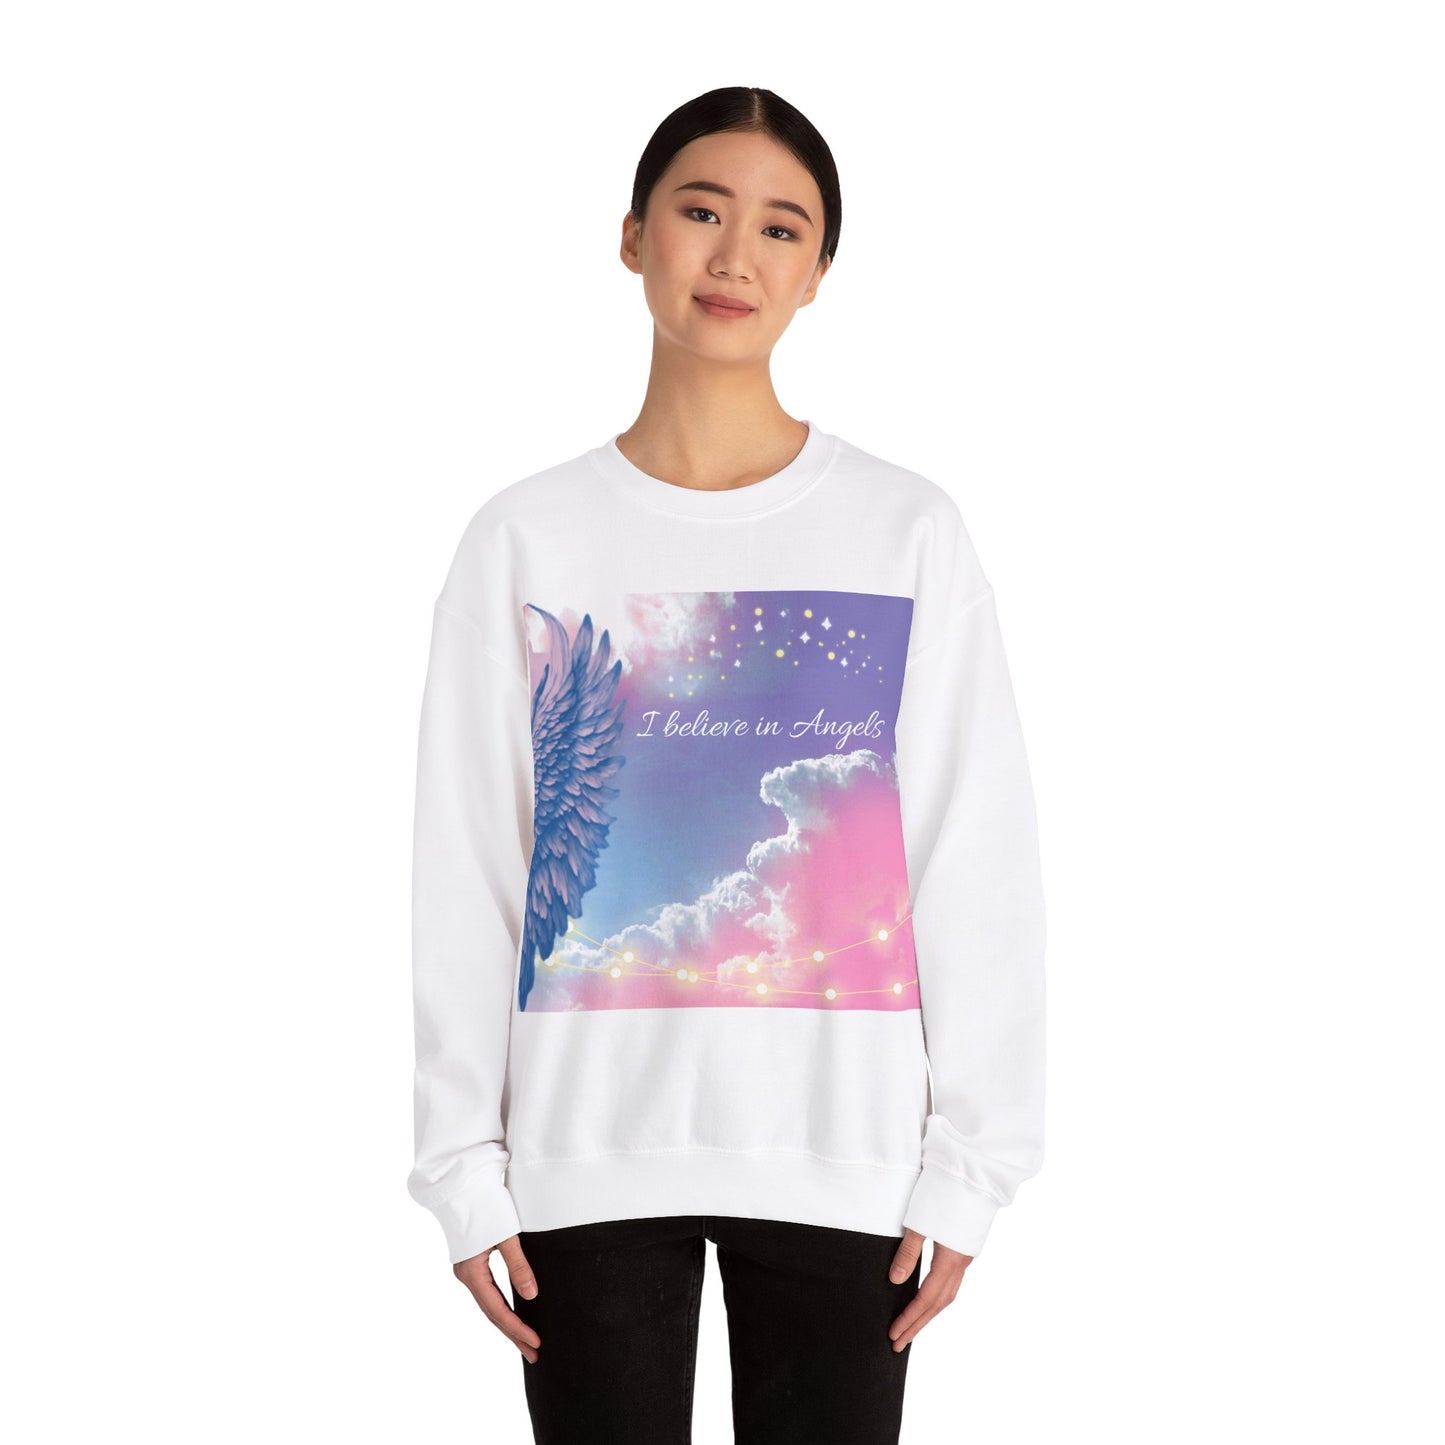 "I believe in Angels" Sweatshirt